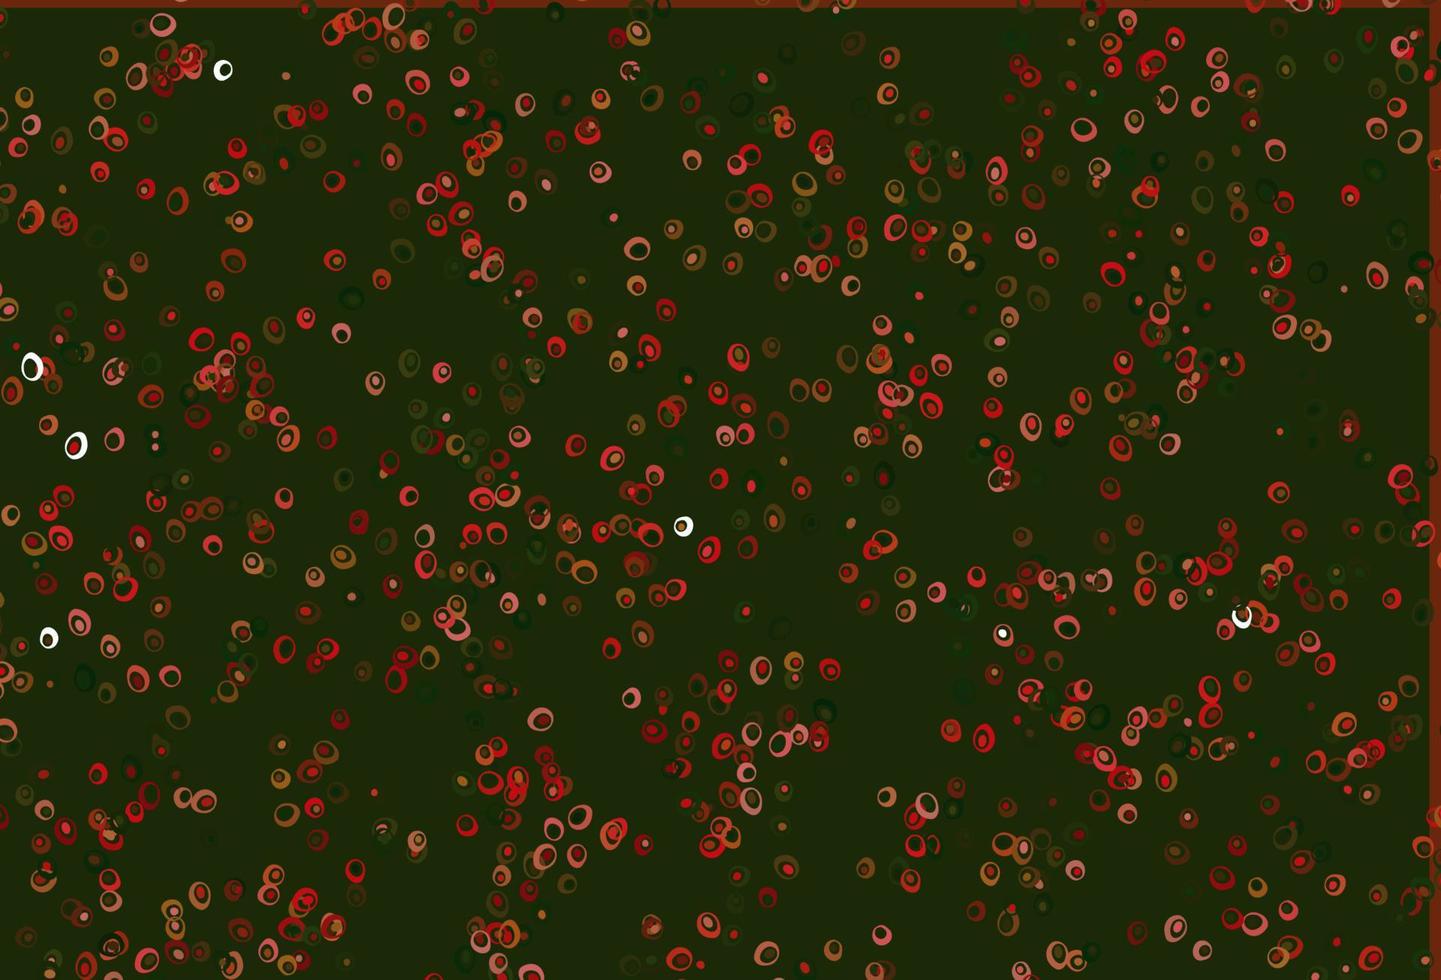 padrão de vetor verde e vermelho claro com esferas.